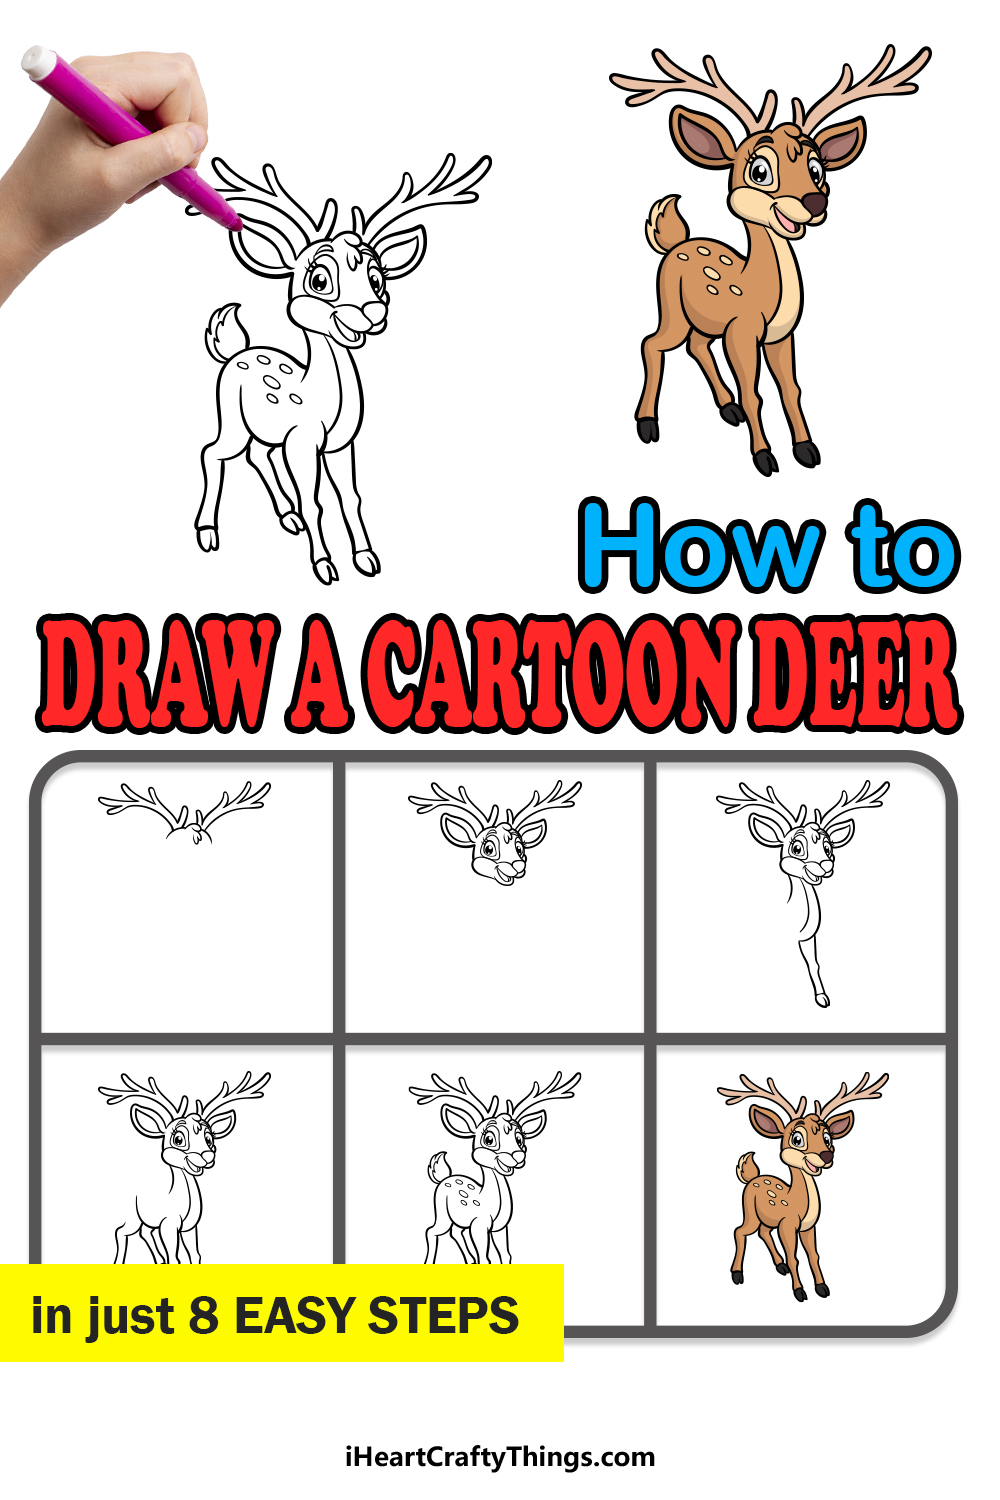 Cartoon Deer Drawing - How To Draw A Cartoon Deer Step By Step